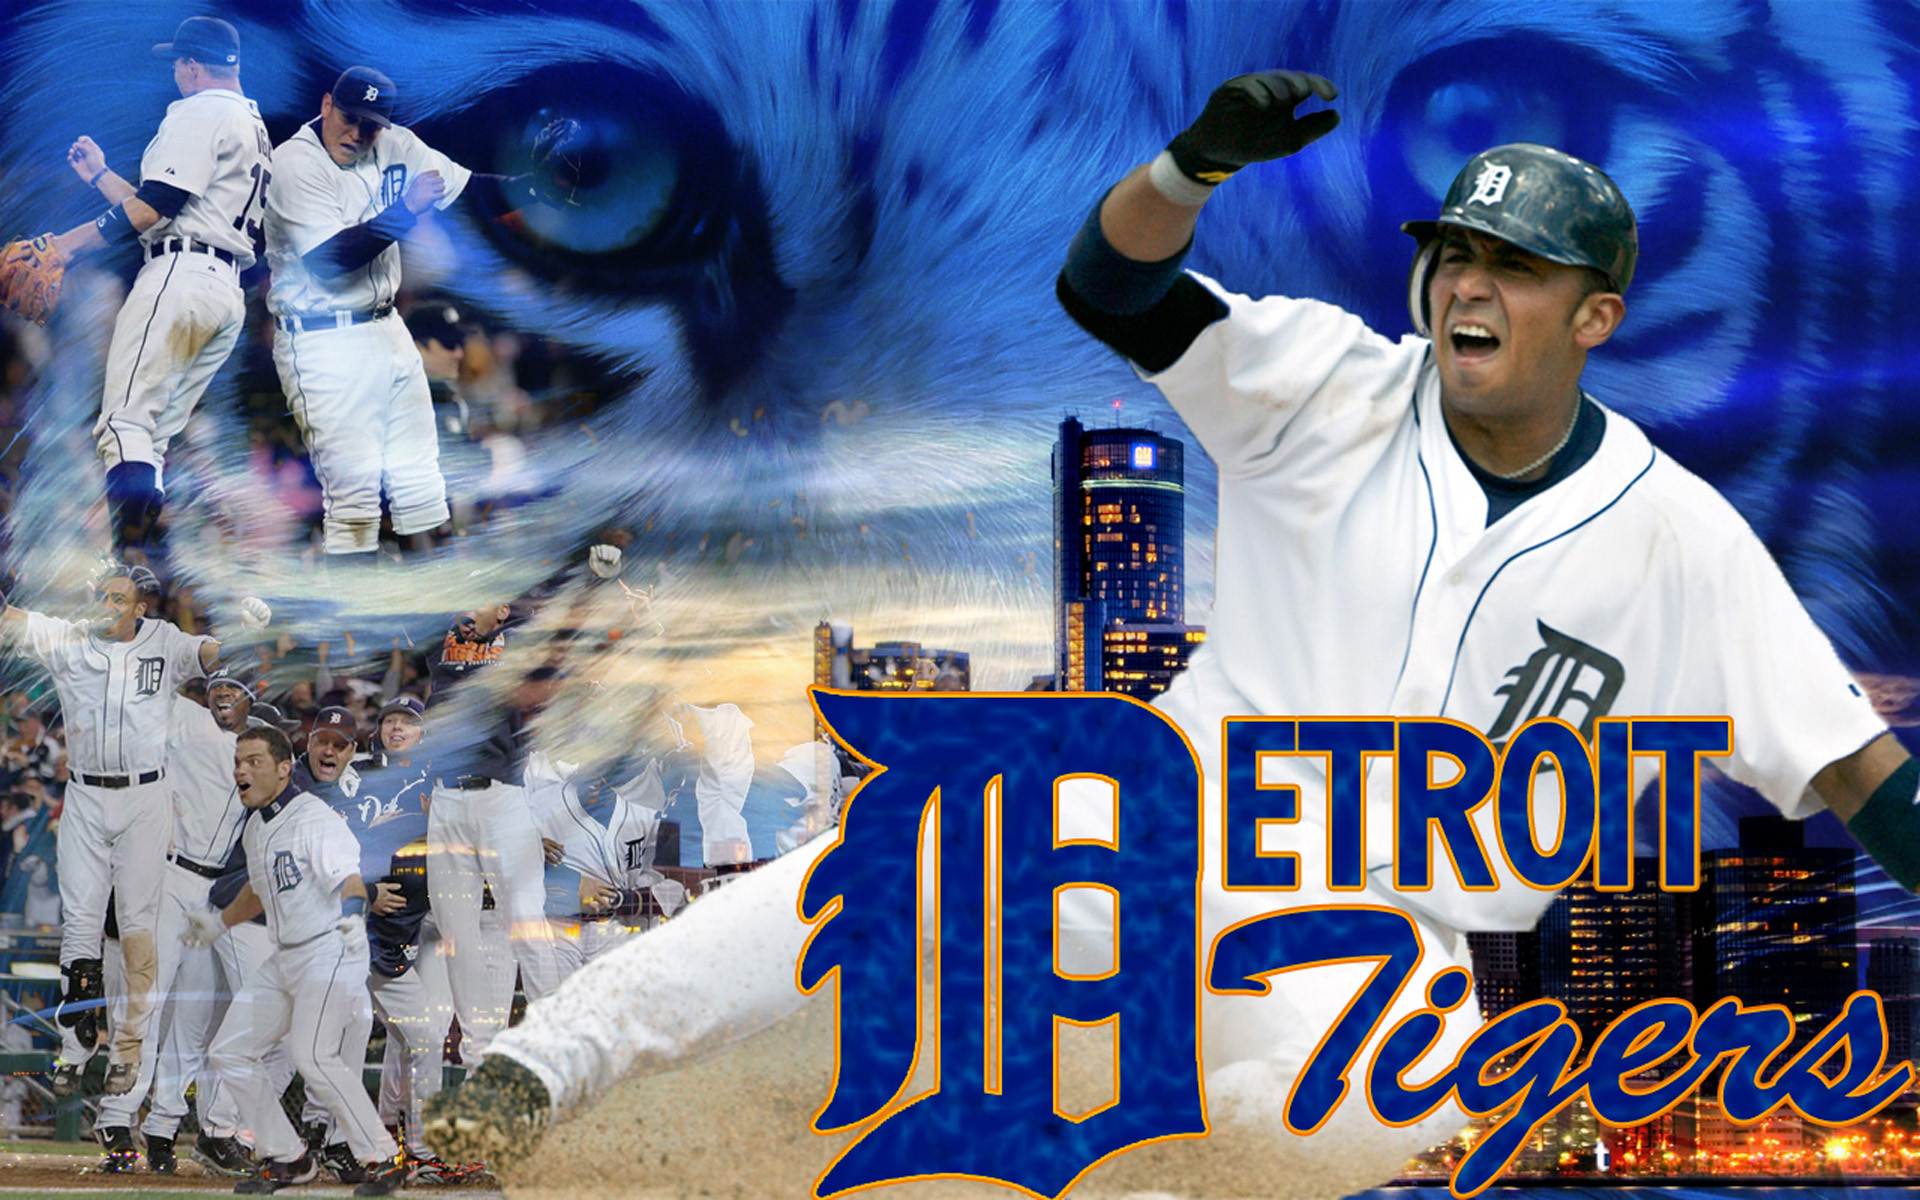 48+] Detroit Tigers Wallpaper Free - WallpaperSafari